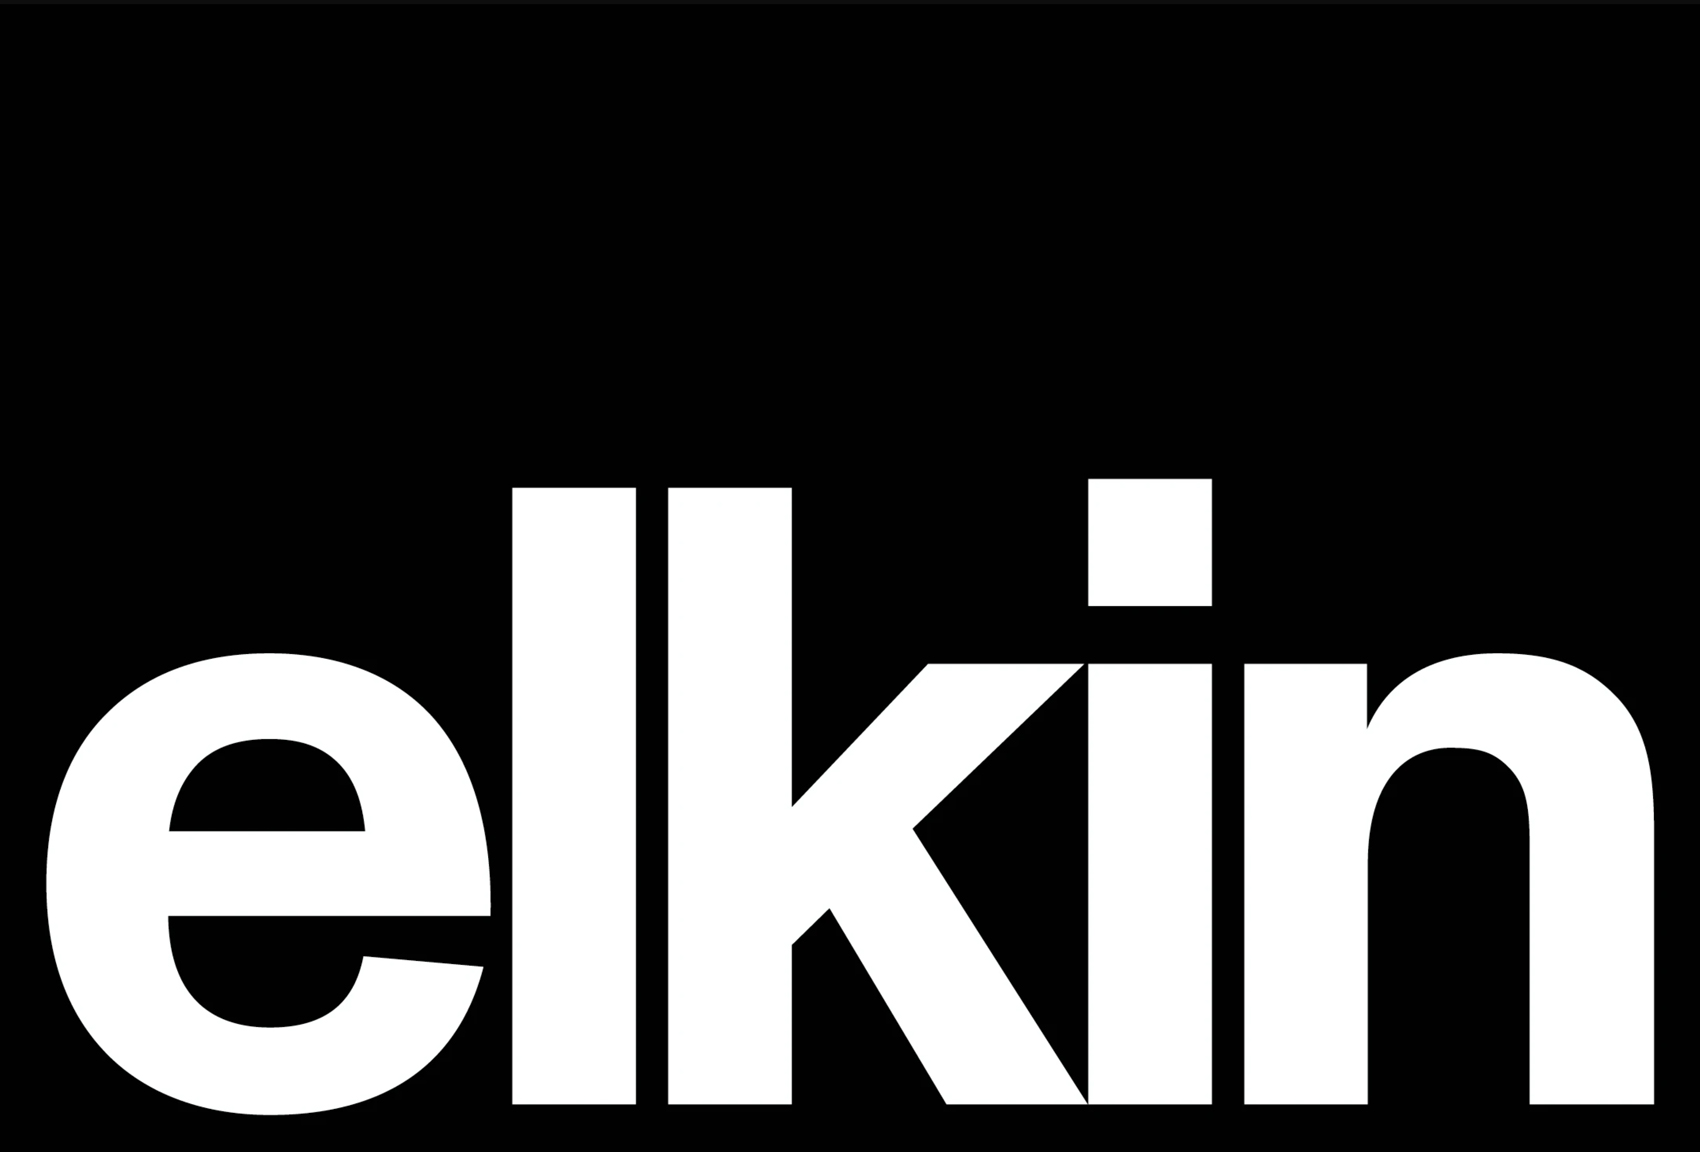 Elkin视频制作工作室品牌形象设计